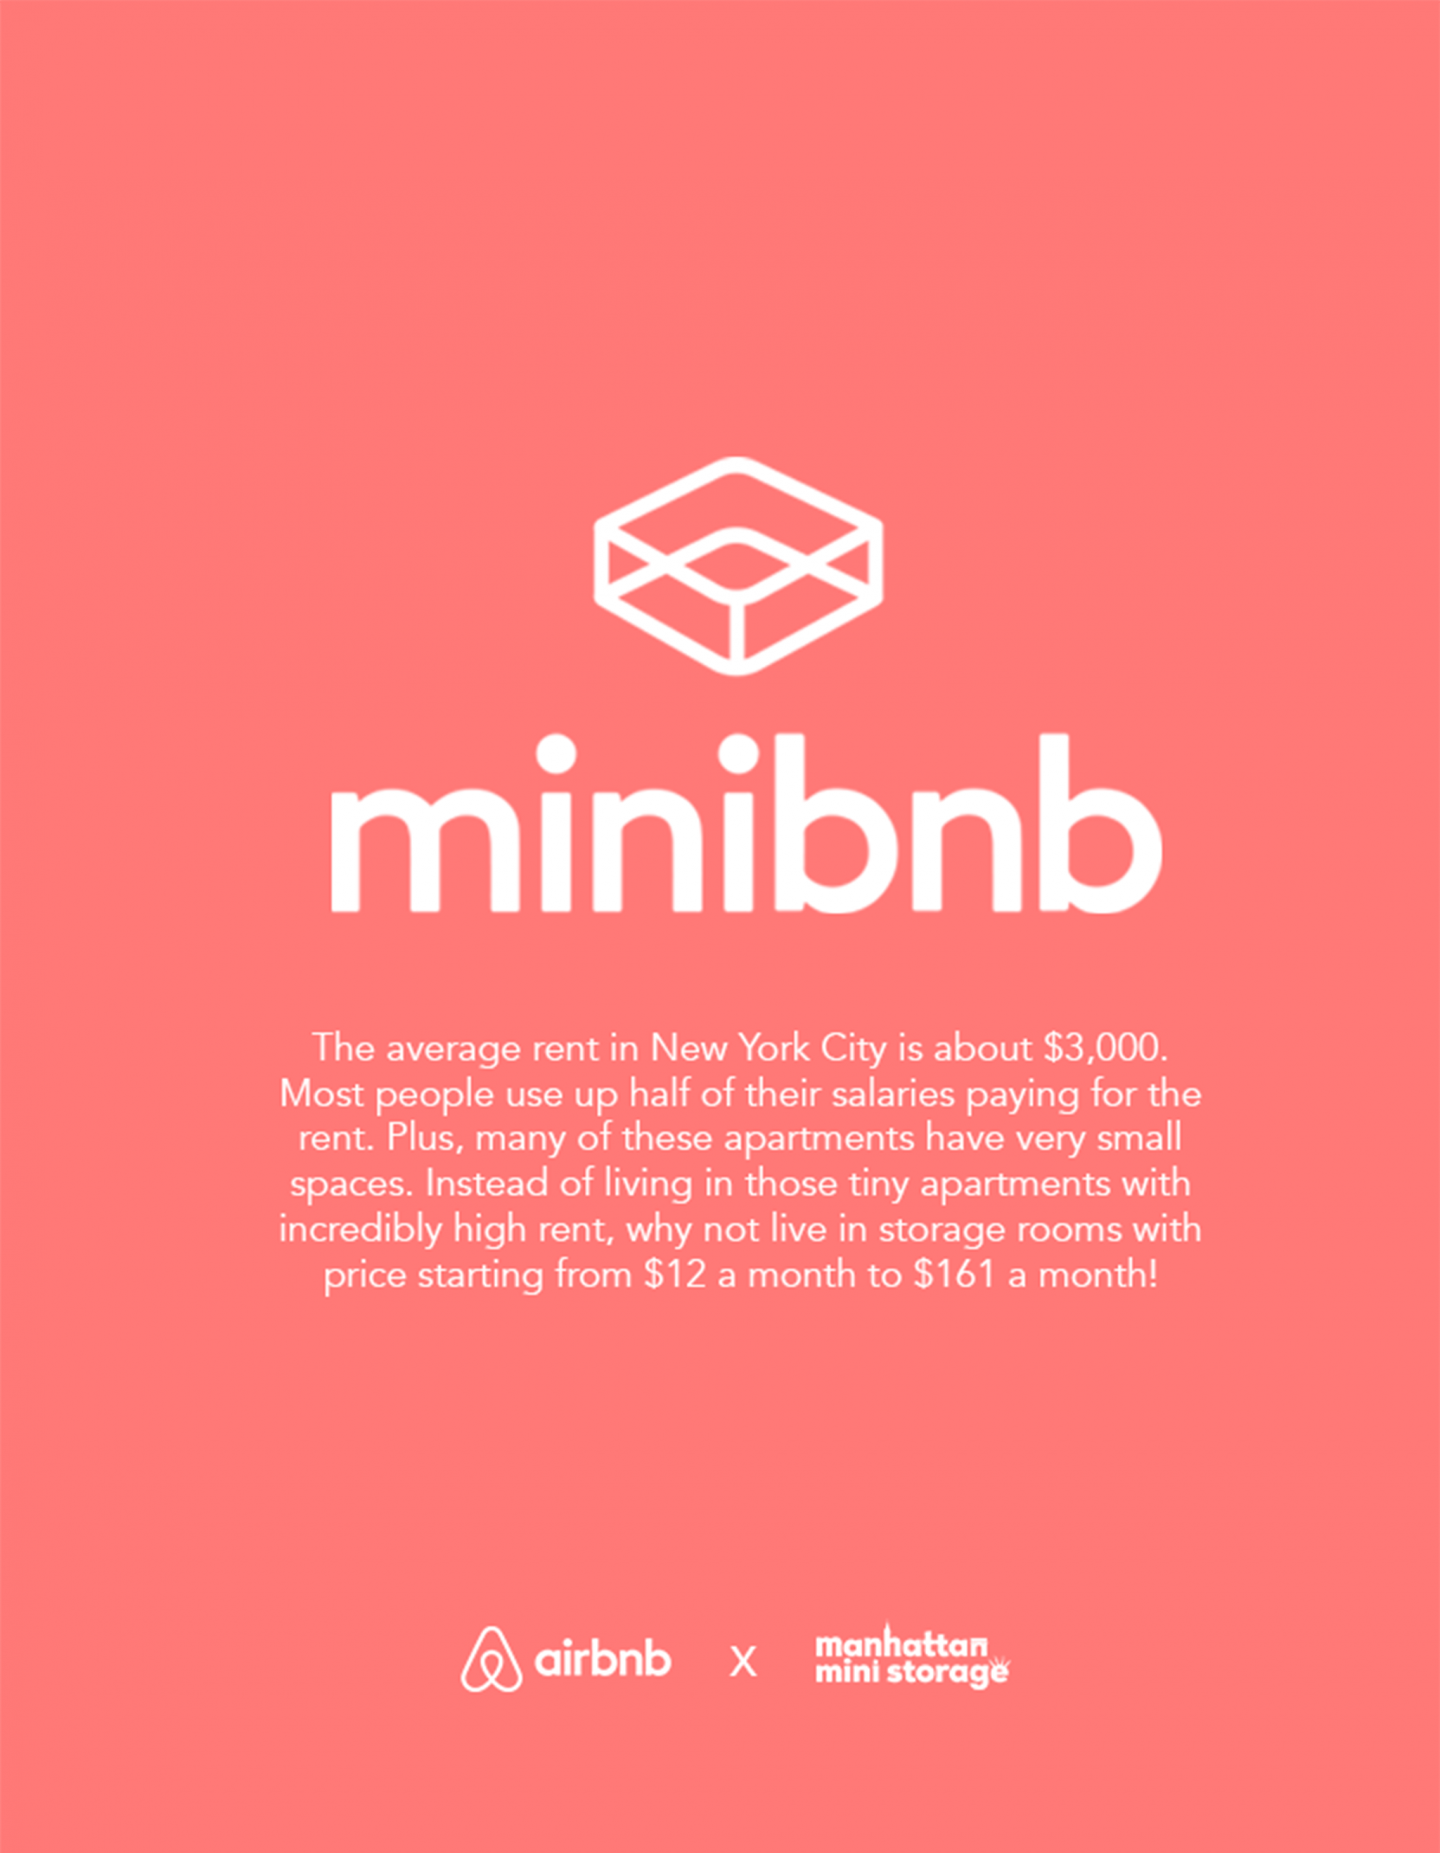 Minibnb